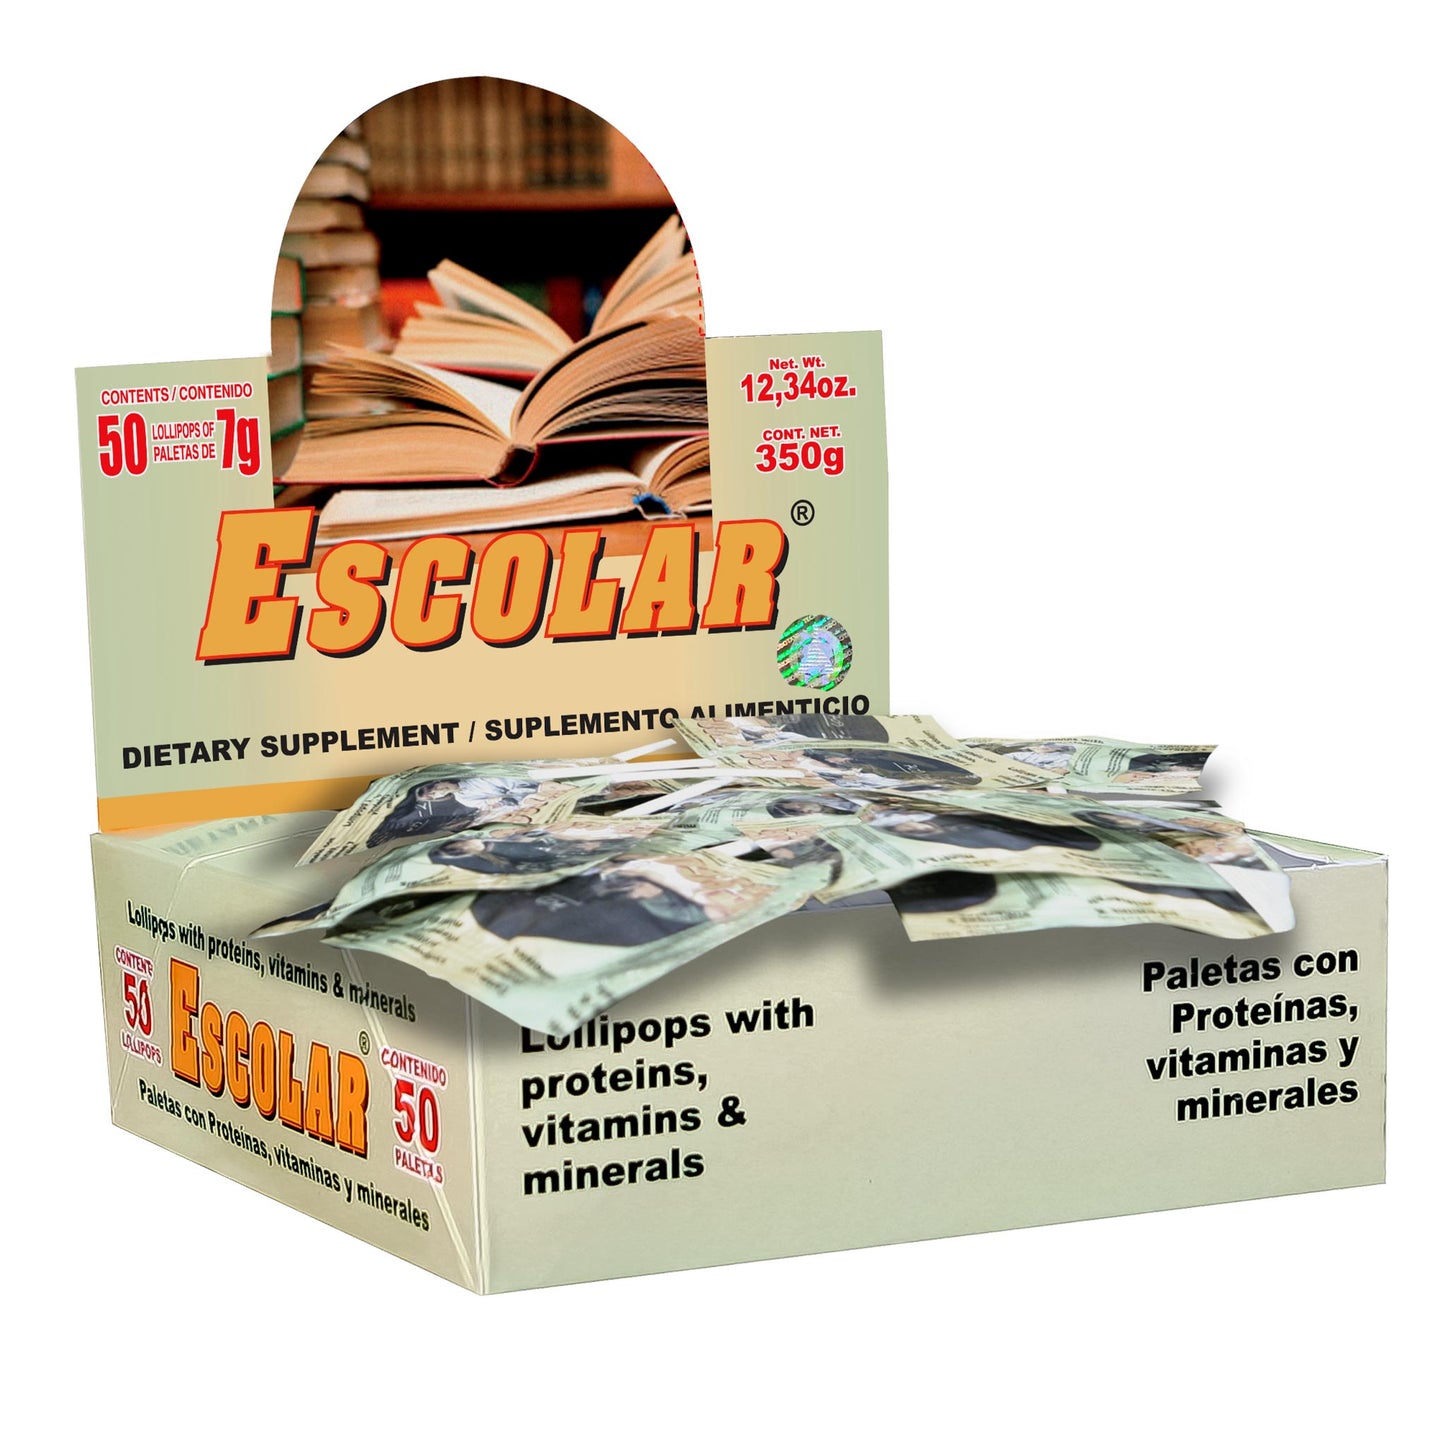 ESCOLAR ® 50 paletas